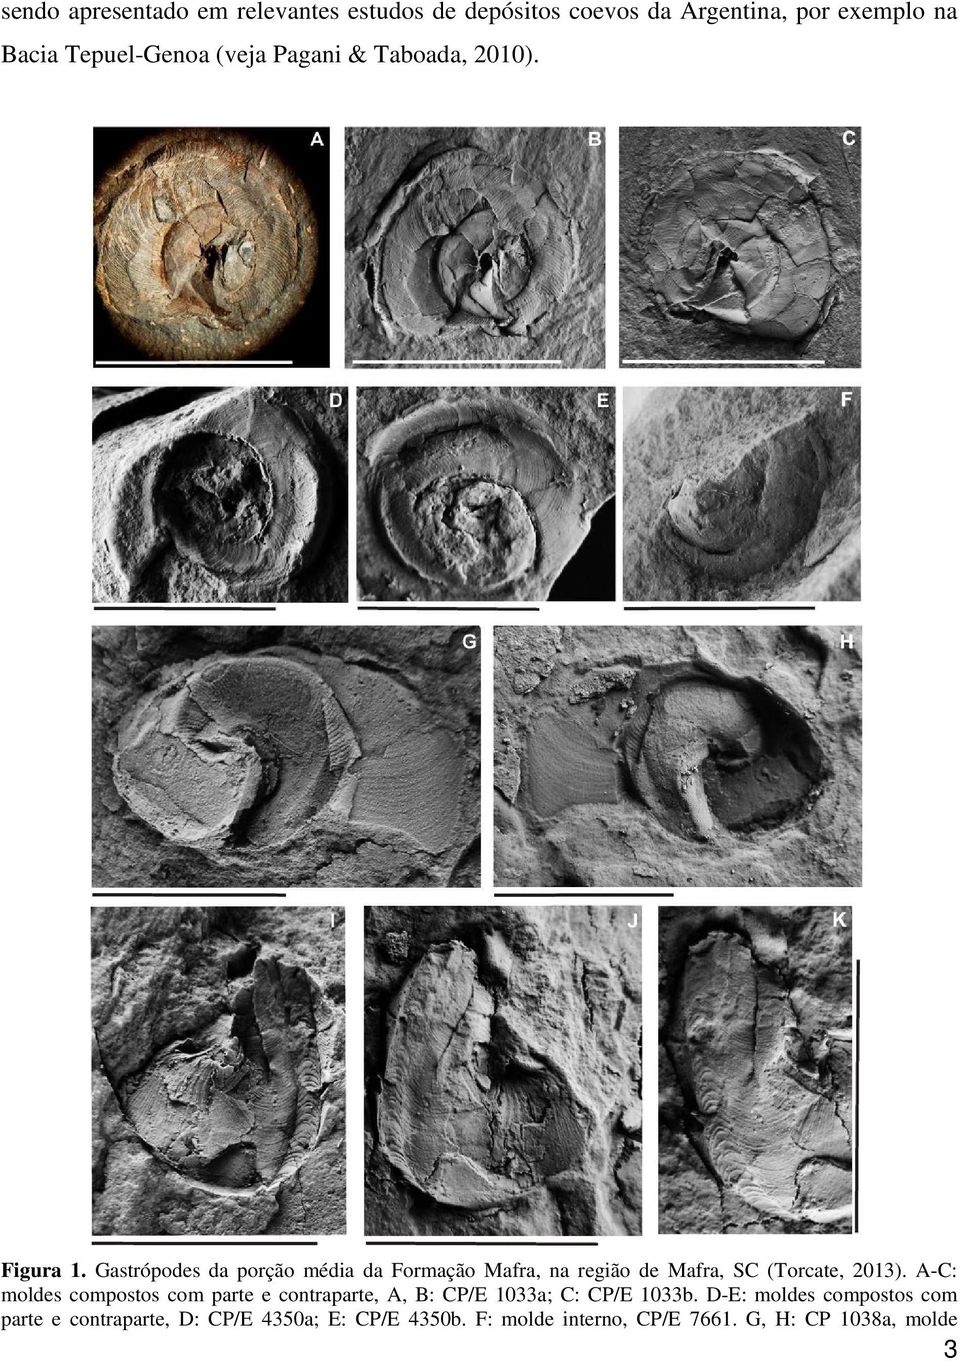 Gastrópodes da porção média da Formação Mafra, na região de Mafra, SC (Torcate, 2013).